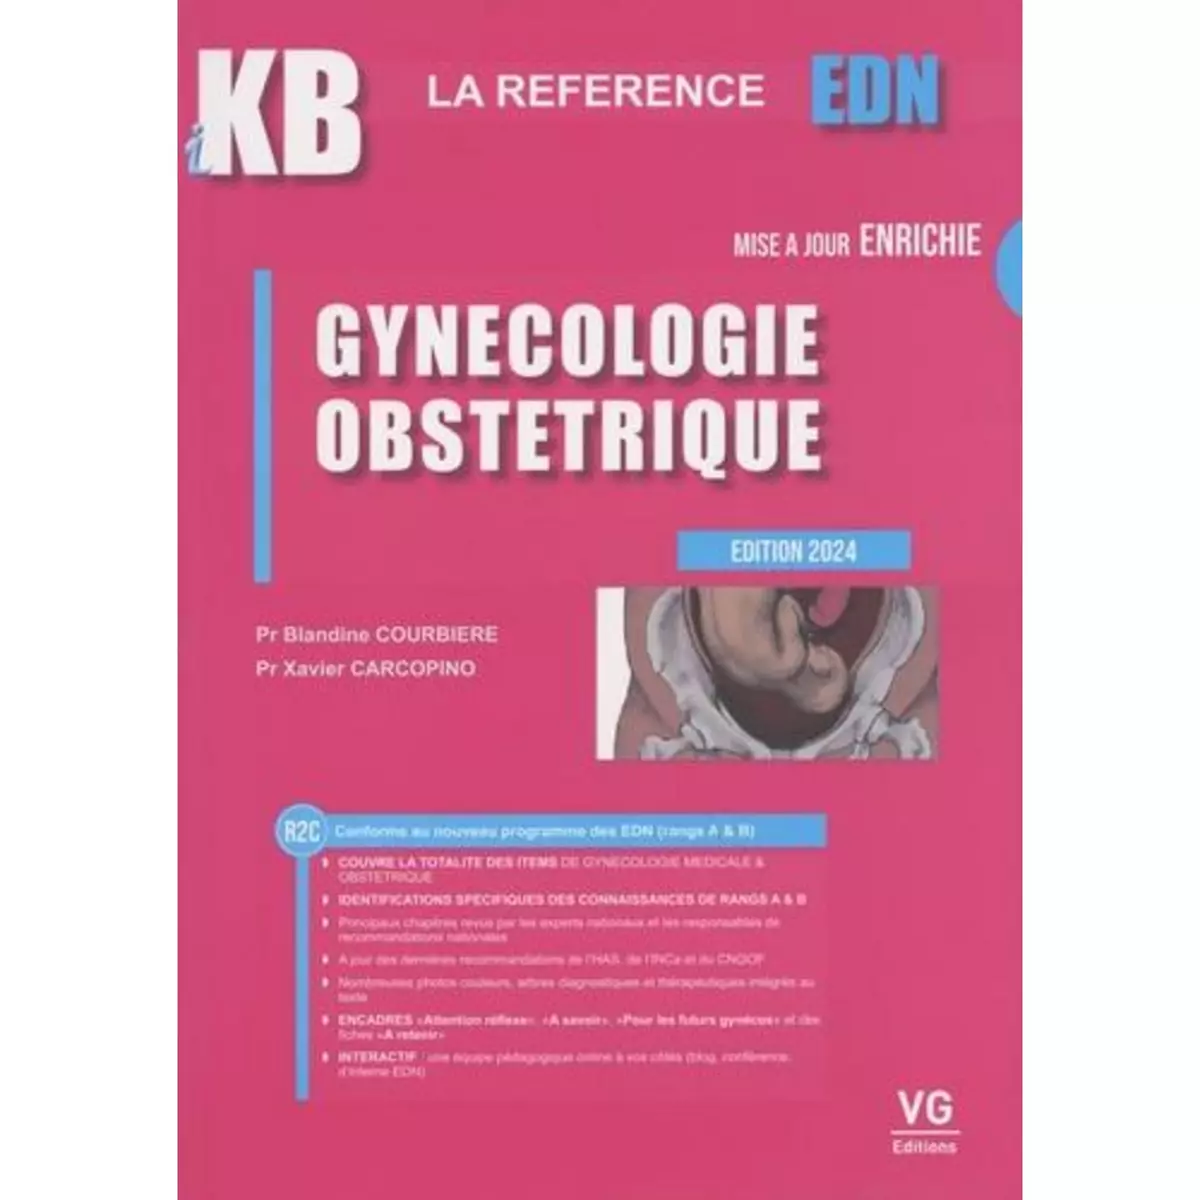  GYNECOLOGIE OBSTETRIQUE. EDITION 2024, Courbière Blandine